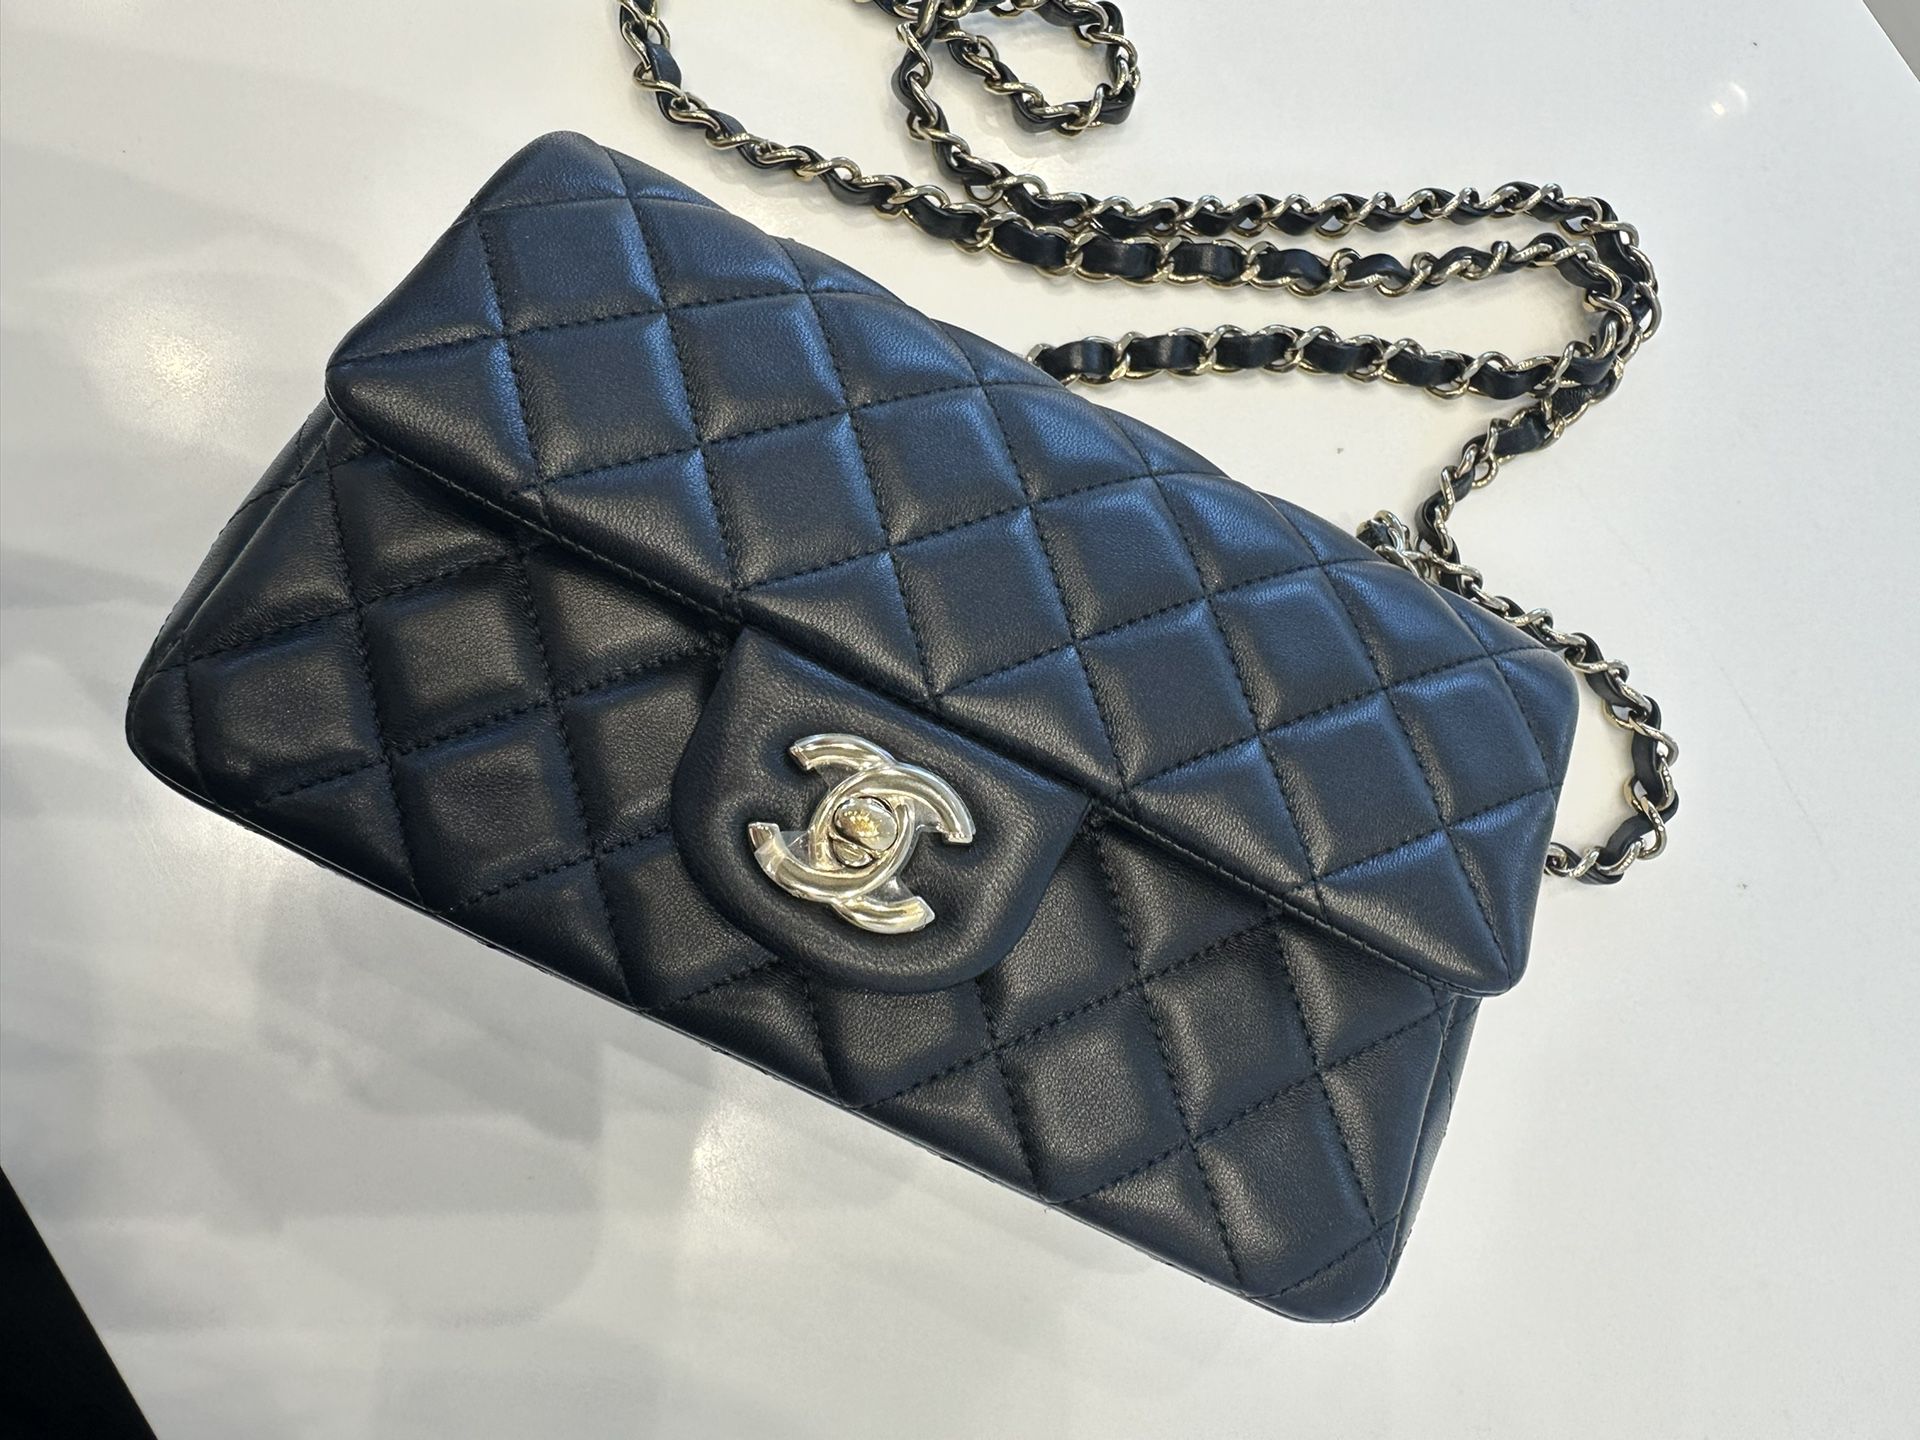 Chanel Classic Mini Flap Bag